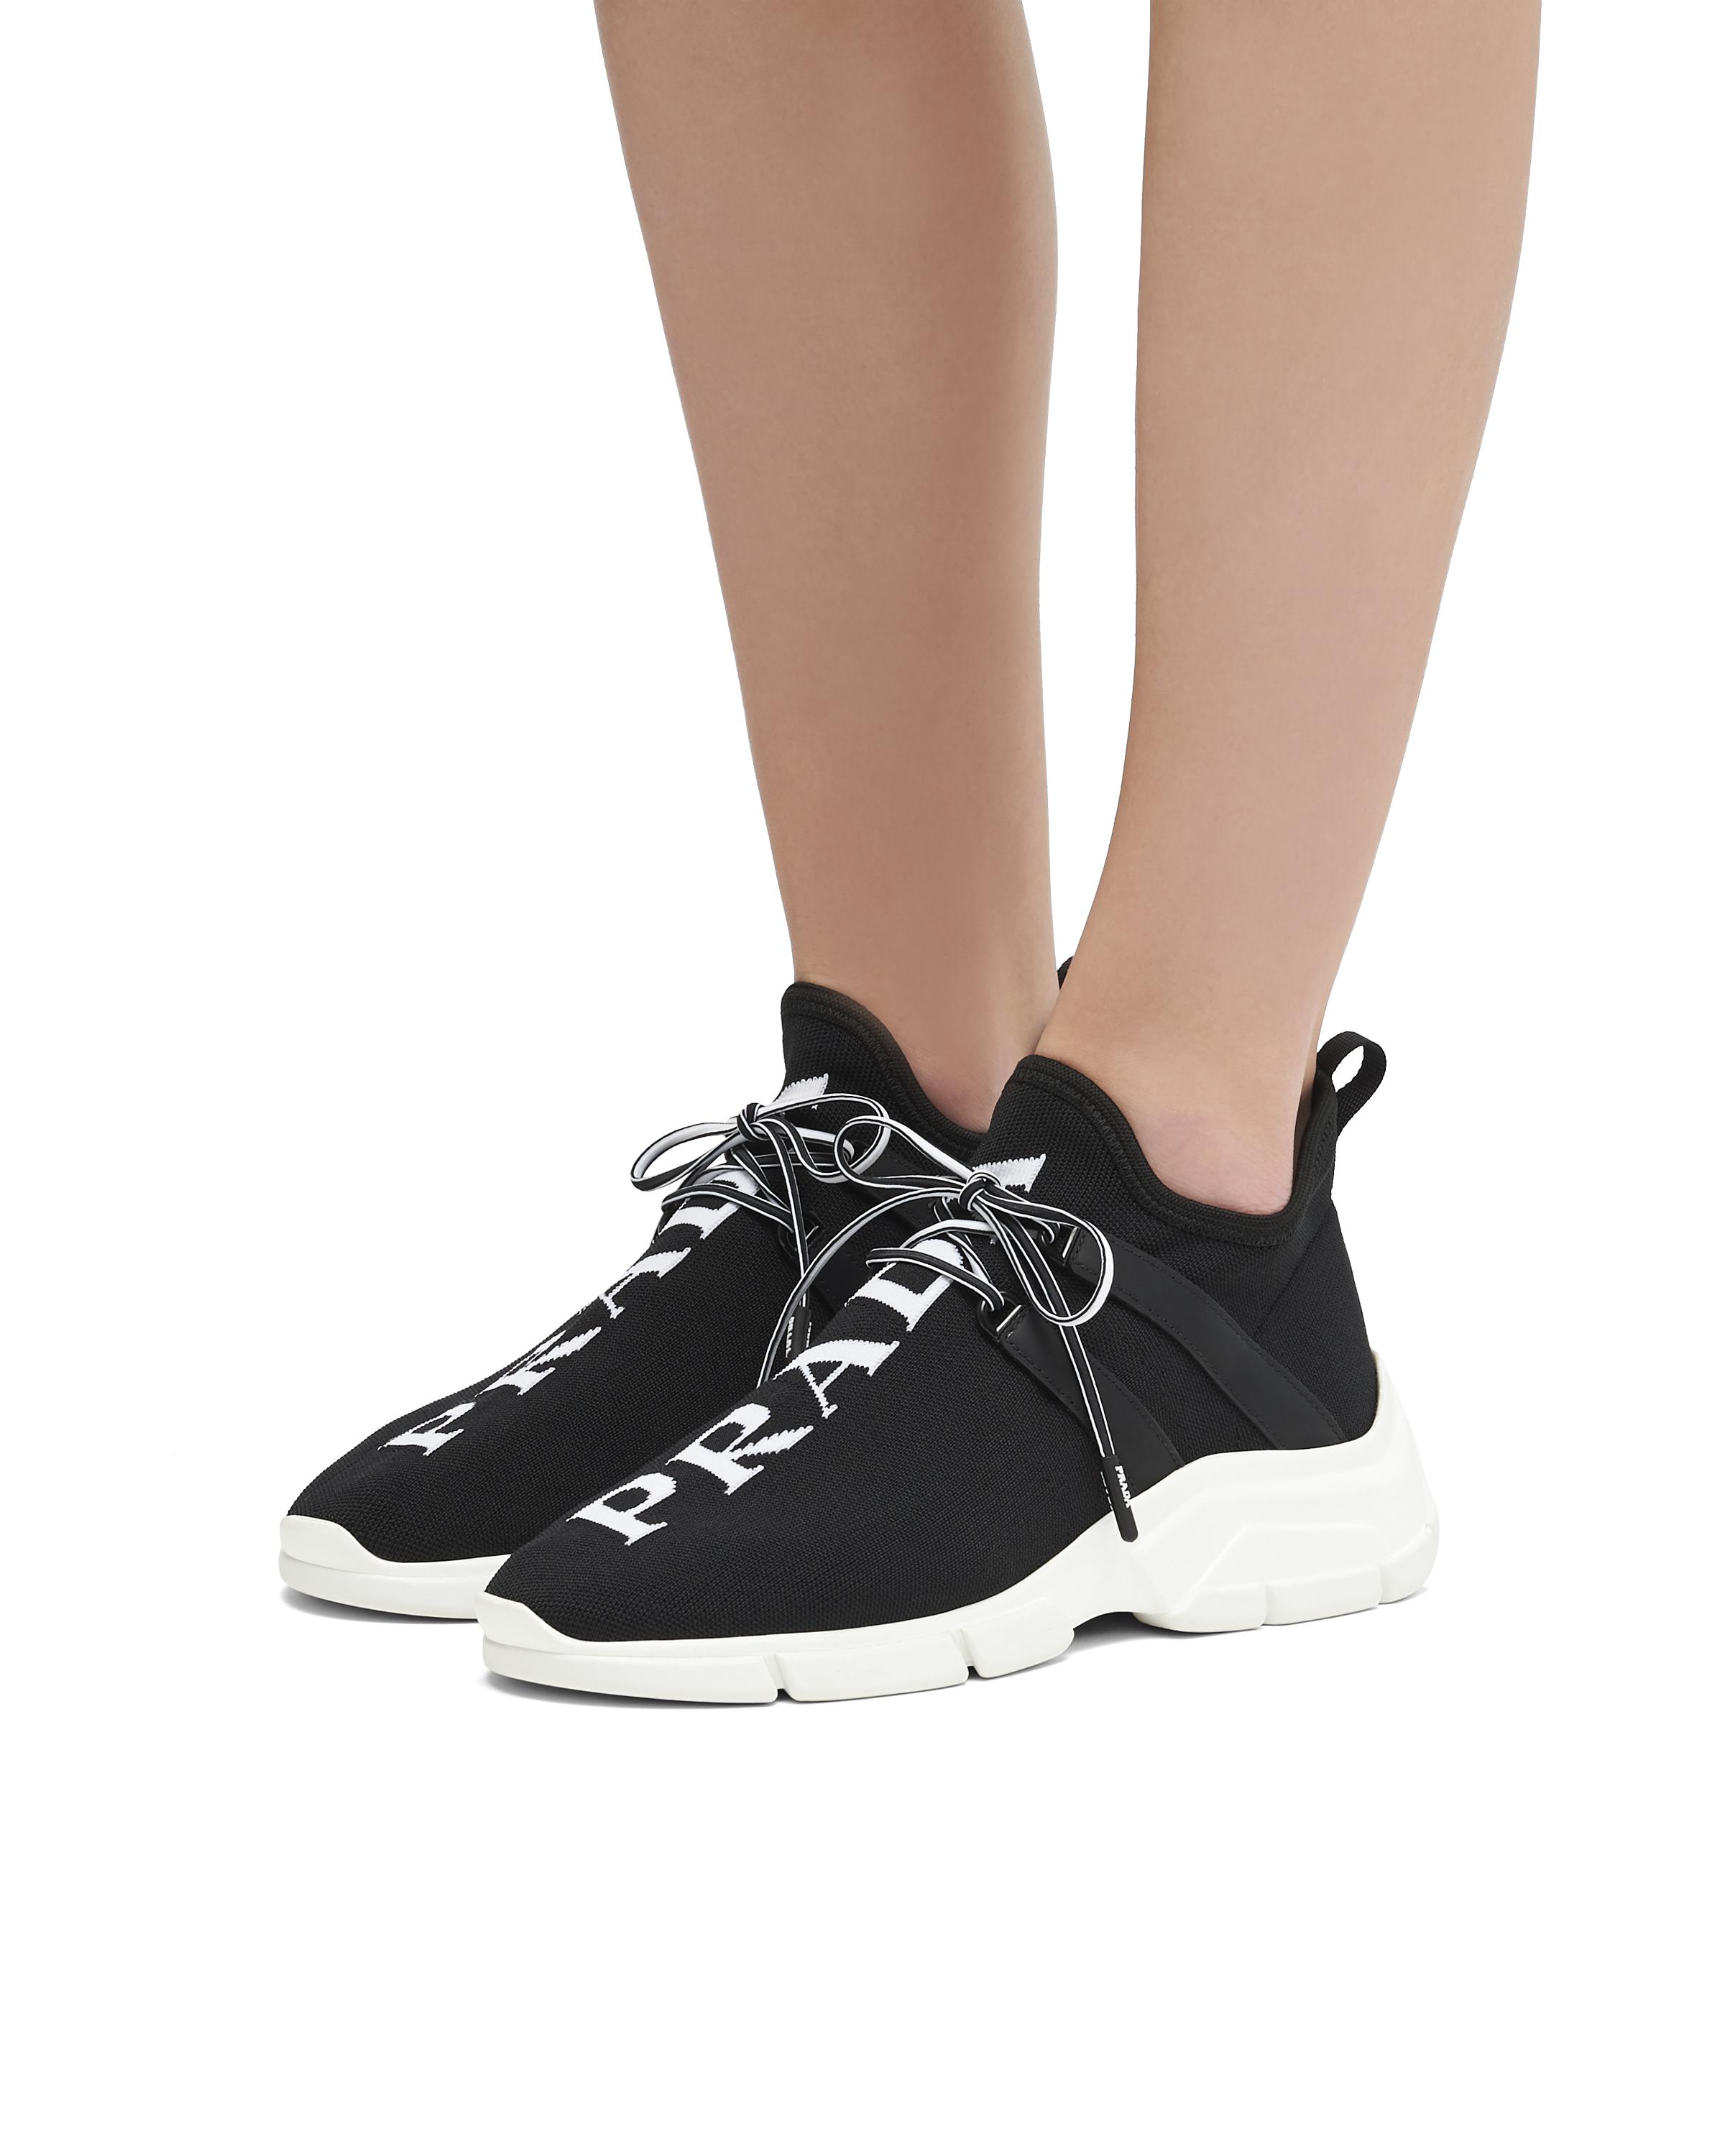 Prada Logo Knit Sneakers in Black/White (Black) - Save 67% | Lyst